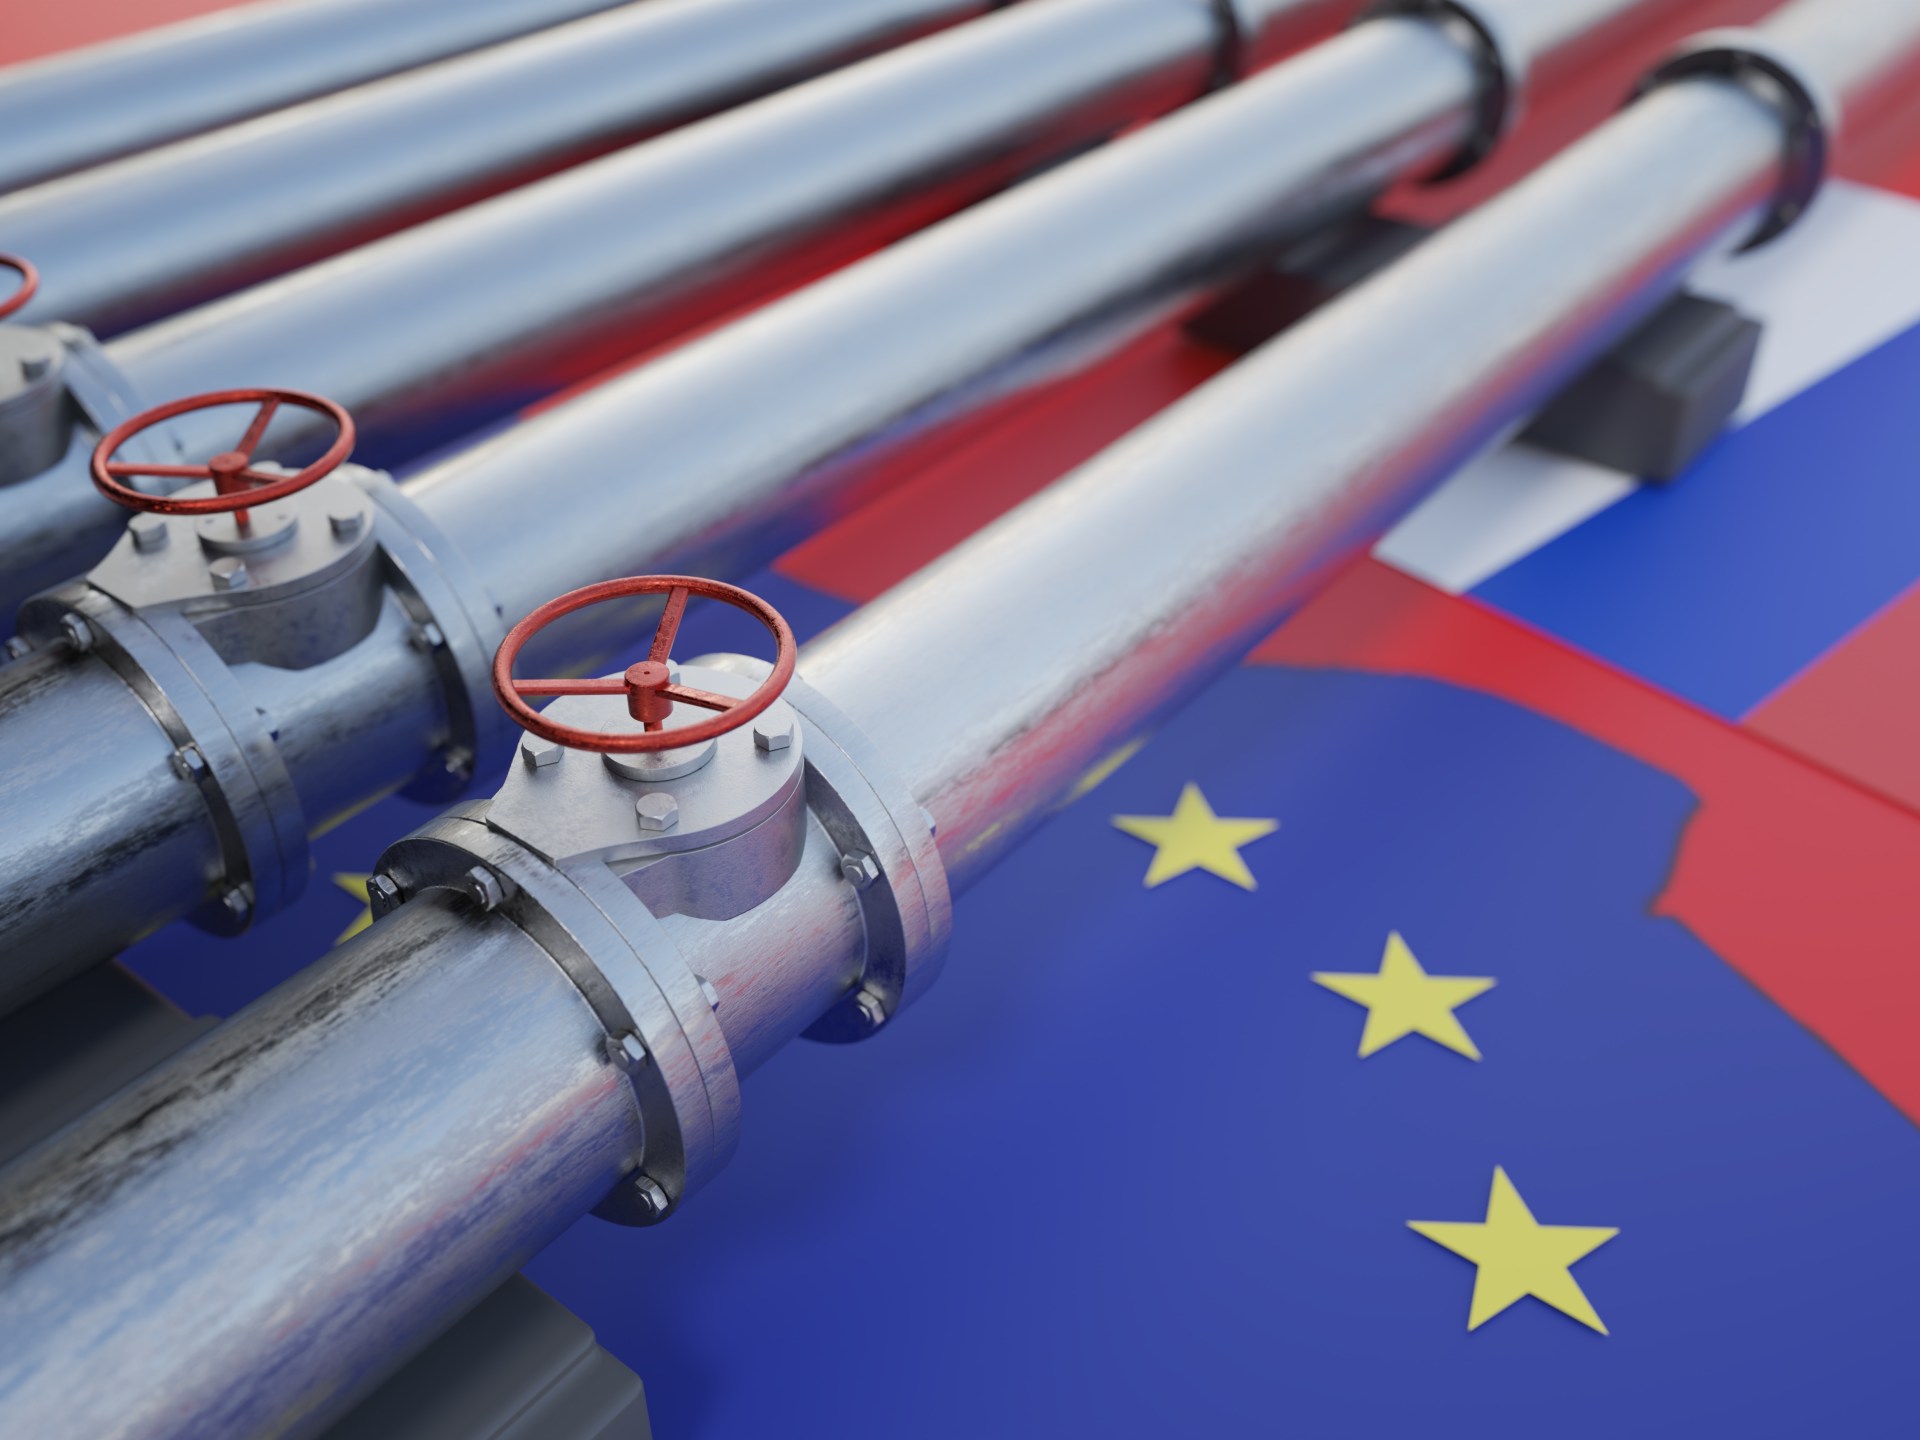 وكالات: روسيا مستعدة لبحث إمدادات الغاز مع الاتحاد الأوروبي | اقتصاد – البوكس نيوز